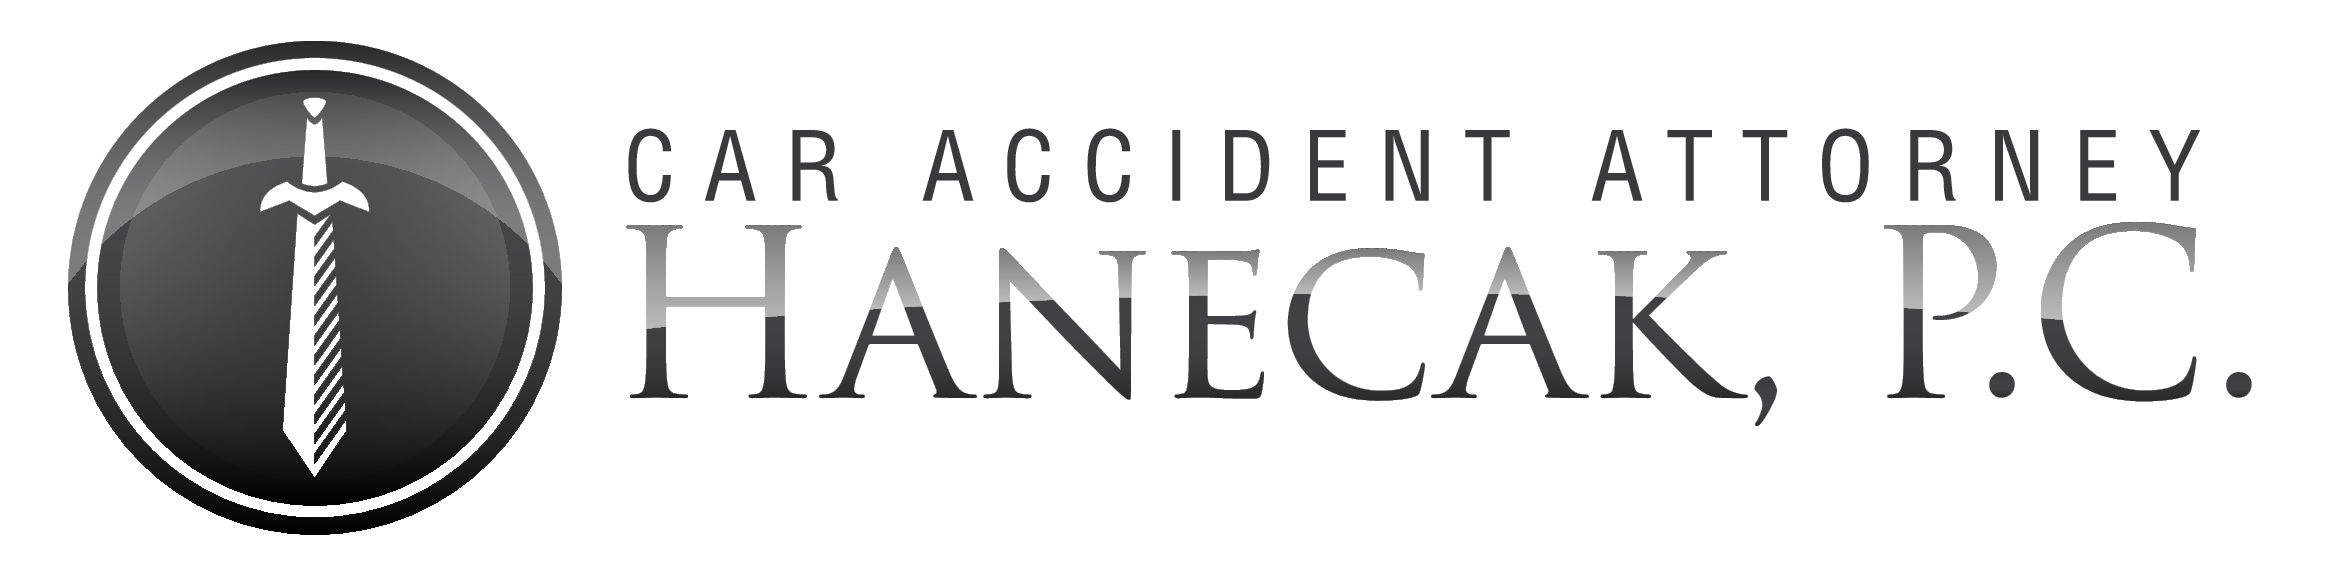 Car Accident Attorney, Hanecak, P.C.